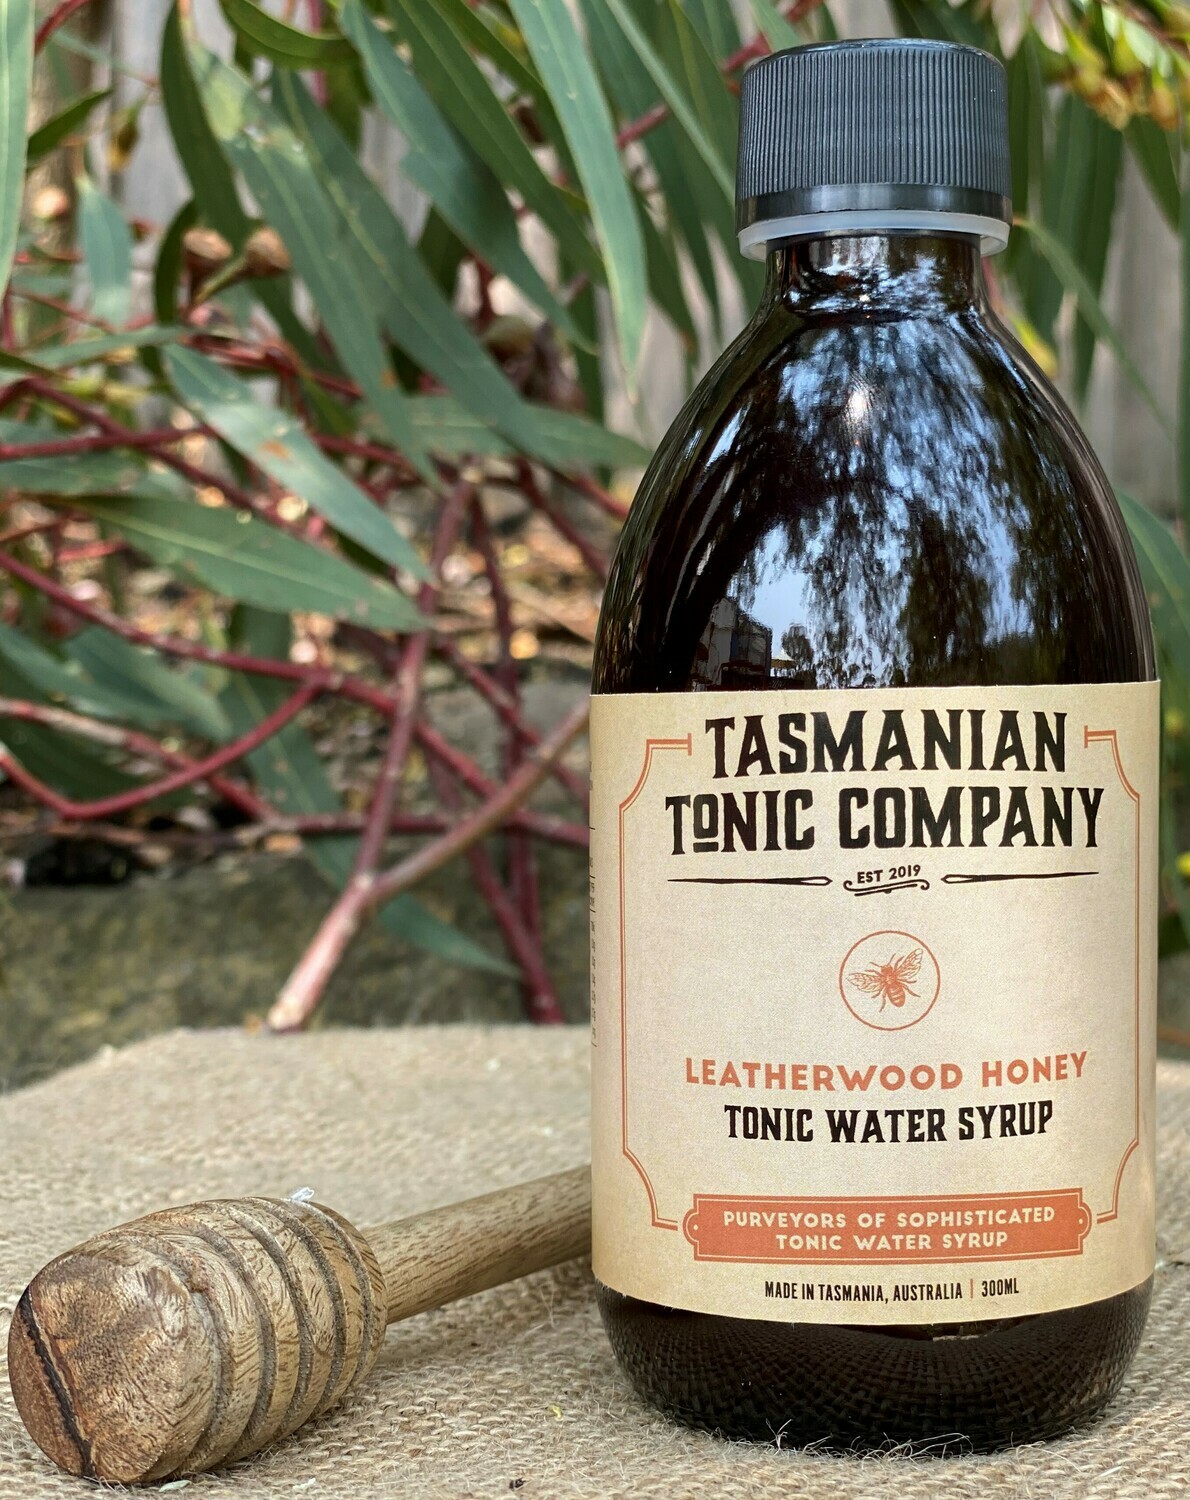 Leatherwood Honey Tonic Water Syrup